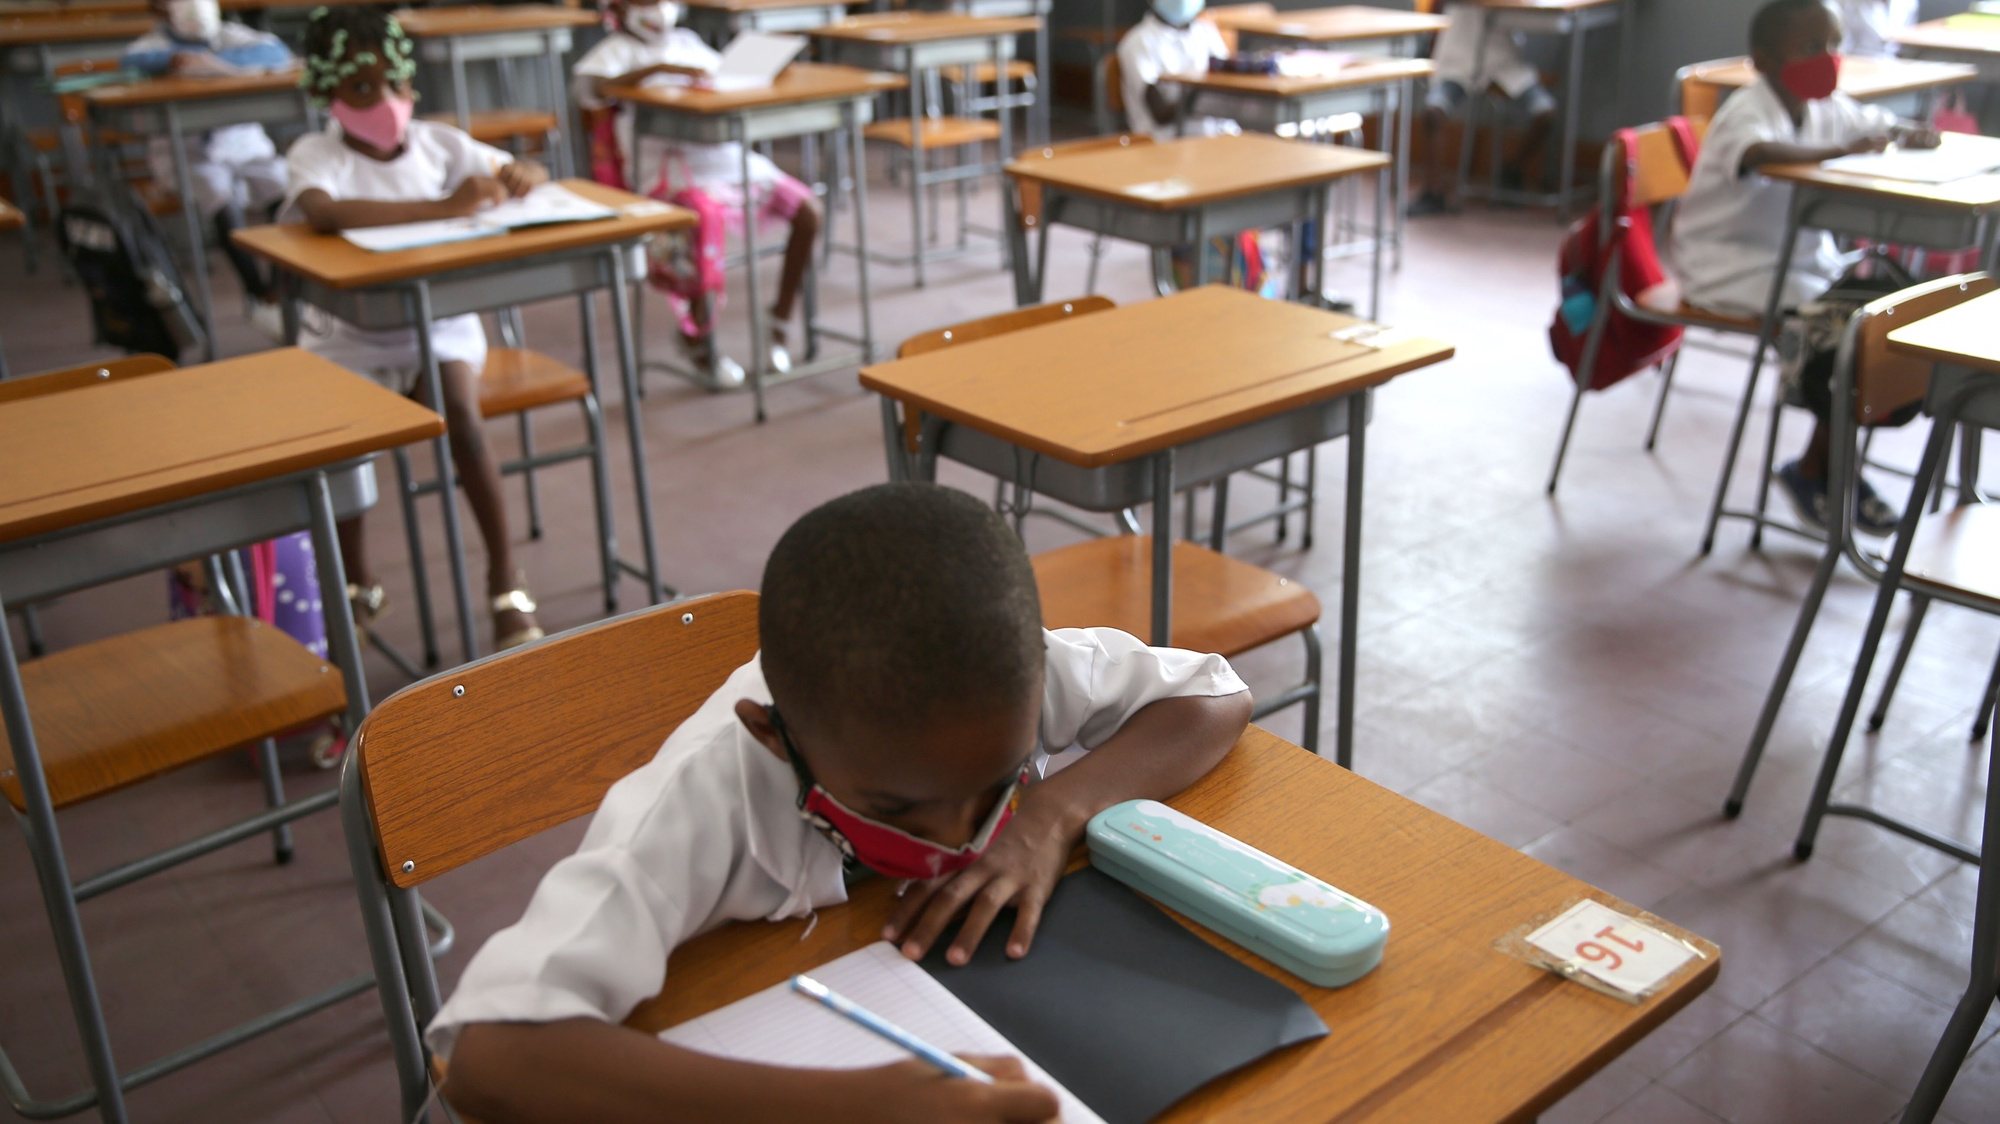 Alunos numa sala de aula da escola 1206, no município da Ingombota, no centro de Luanda, no dia do regresso às aulas presenciais, depois do levantamento das restrições pelo Governo, no âmbito do alívio das medidas de restrição para conter a pandemia da covid-19, Angola, 10 de fevereiro de 2021. Alunos do ensino primário em Angola regressaram hoje às escolas, quase um ano depois de as aulas presenciais terem sido suspensas devido à covid-19, com alguns pais ainda receosos e outros confiantes no cumprimento das medidas de segurança. (ACOMPANHA TEXTO DA LUSA). AMPE ROGÉRIO/LUSA